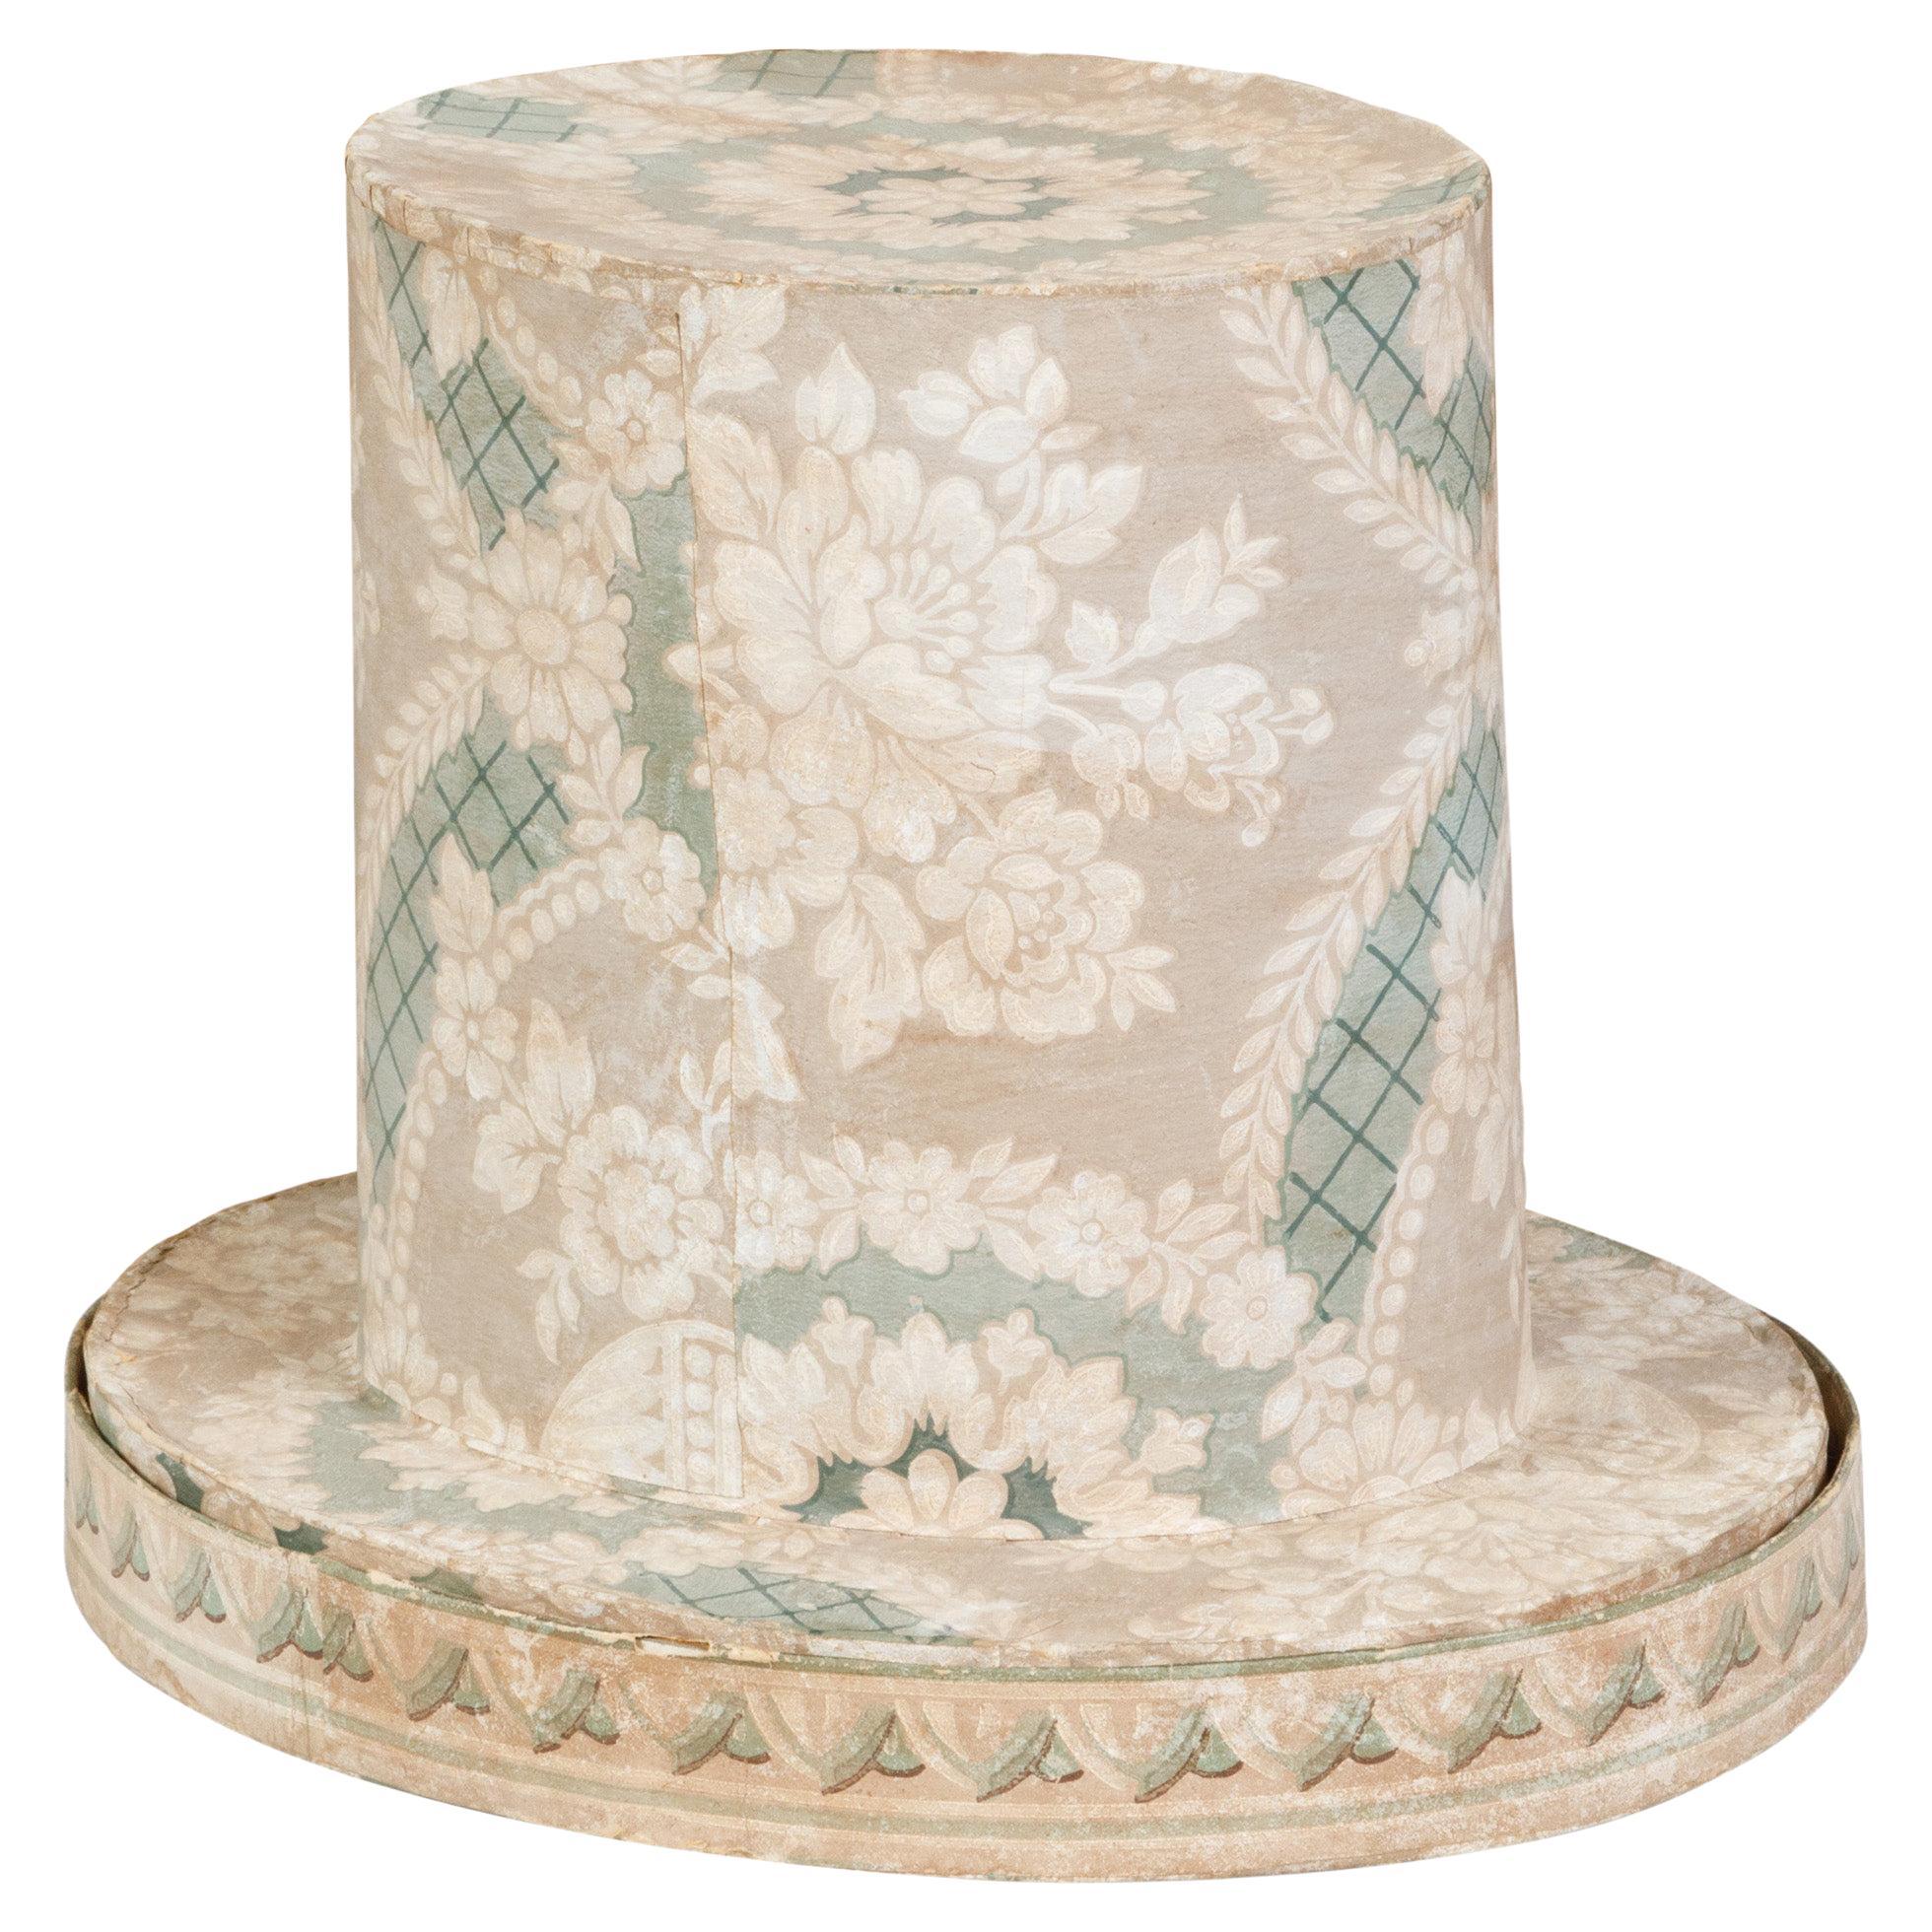 Englische englische Hutschachtel aus dem 19. Jahrhundert aus der viktorianischen Zeit mit Blumendekor